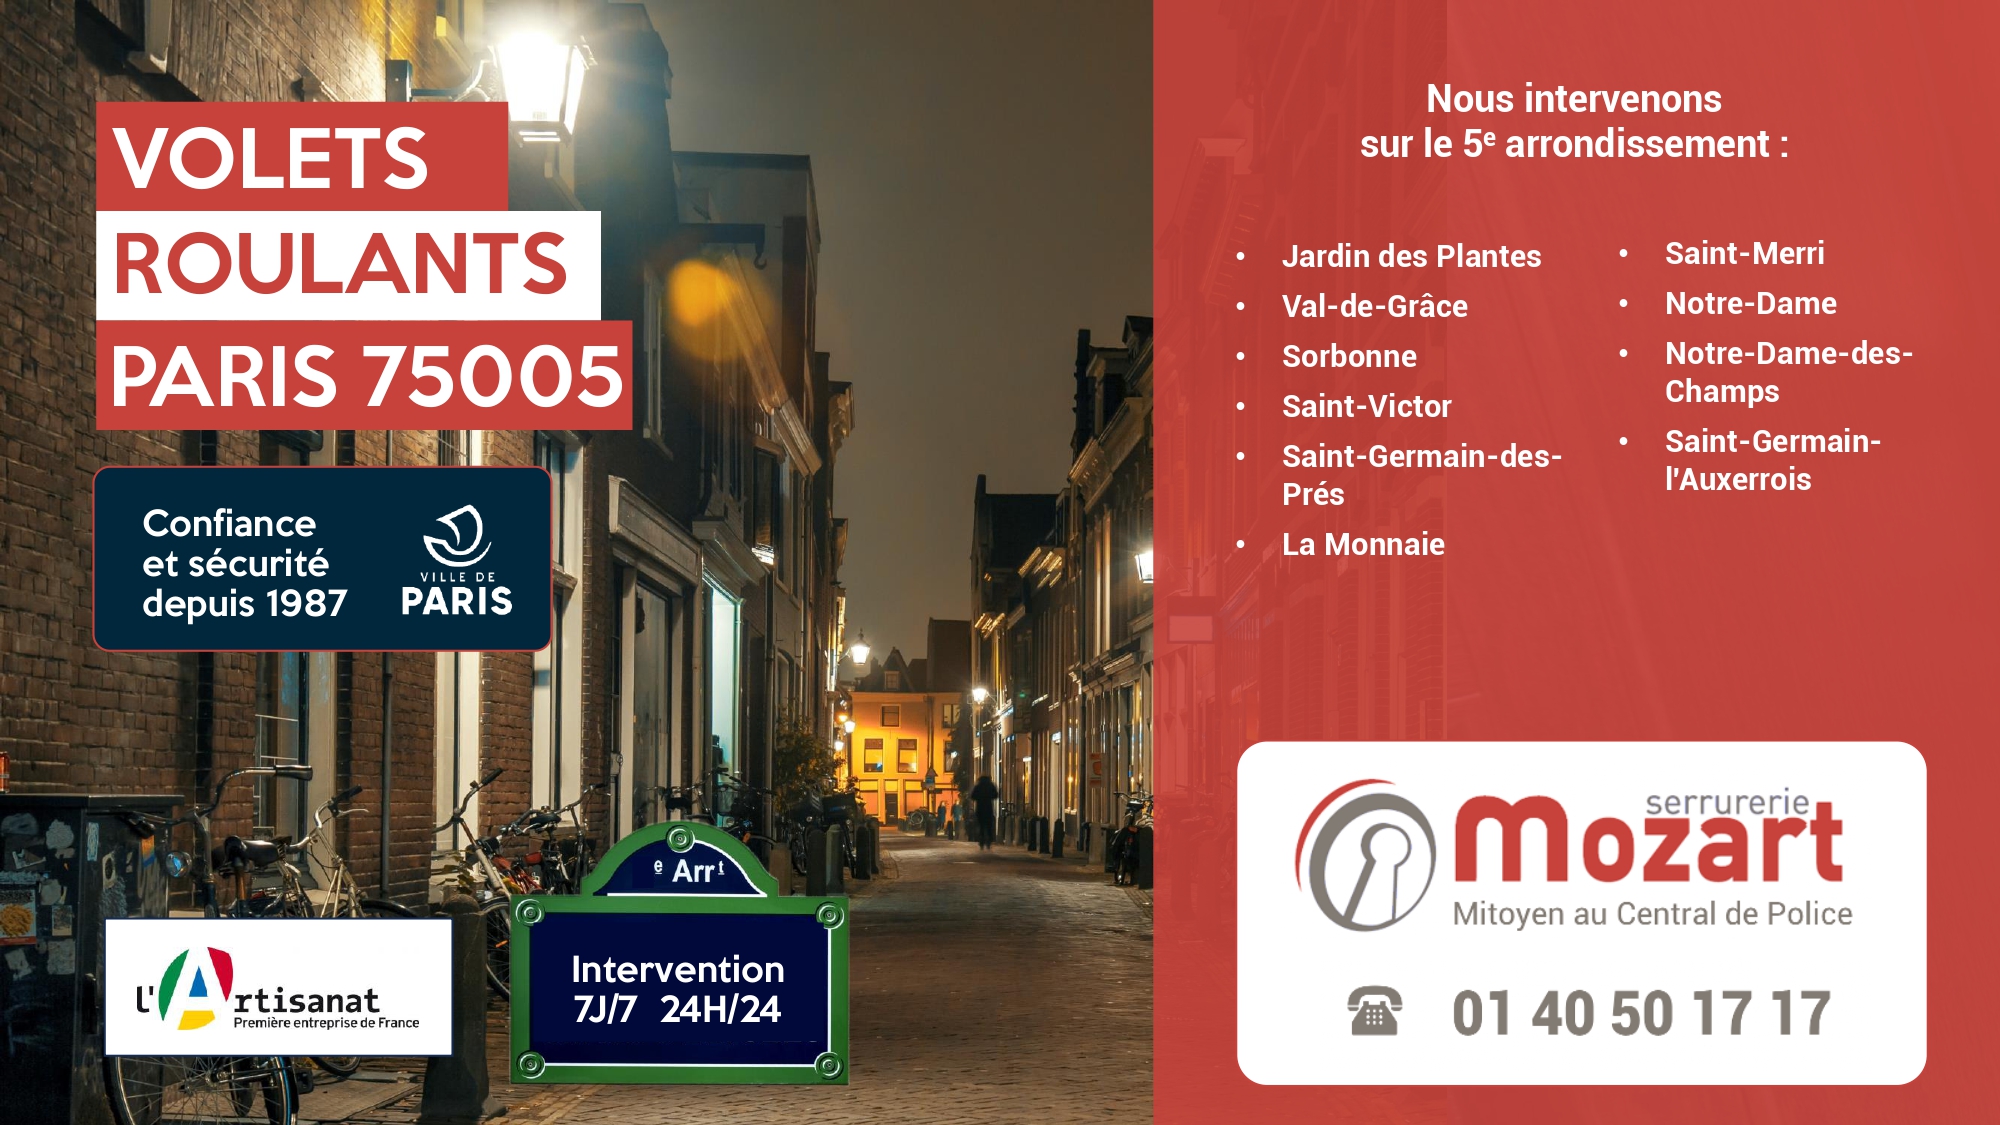 Réparation de volets par Serrurerie Mozart - Rue Saint-Jacques, 5e - 01 40 50 17 17